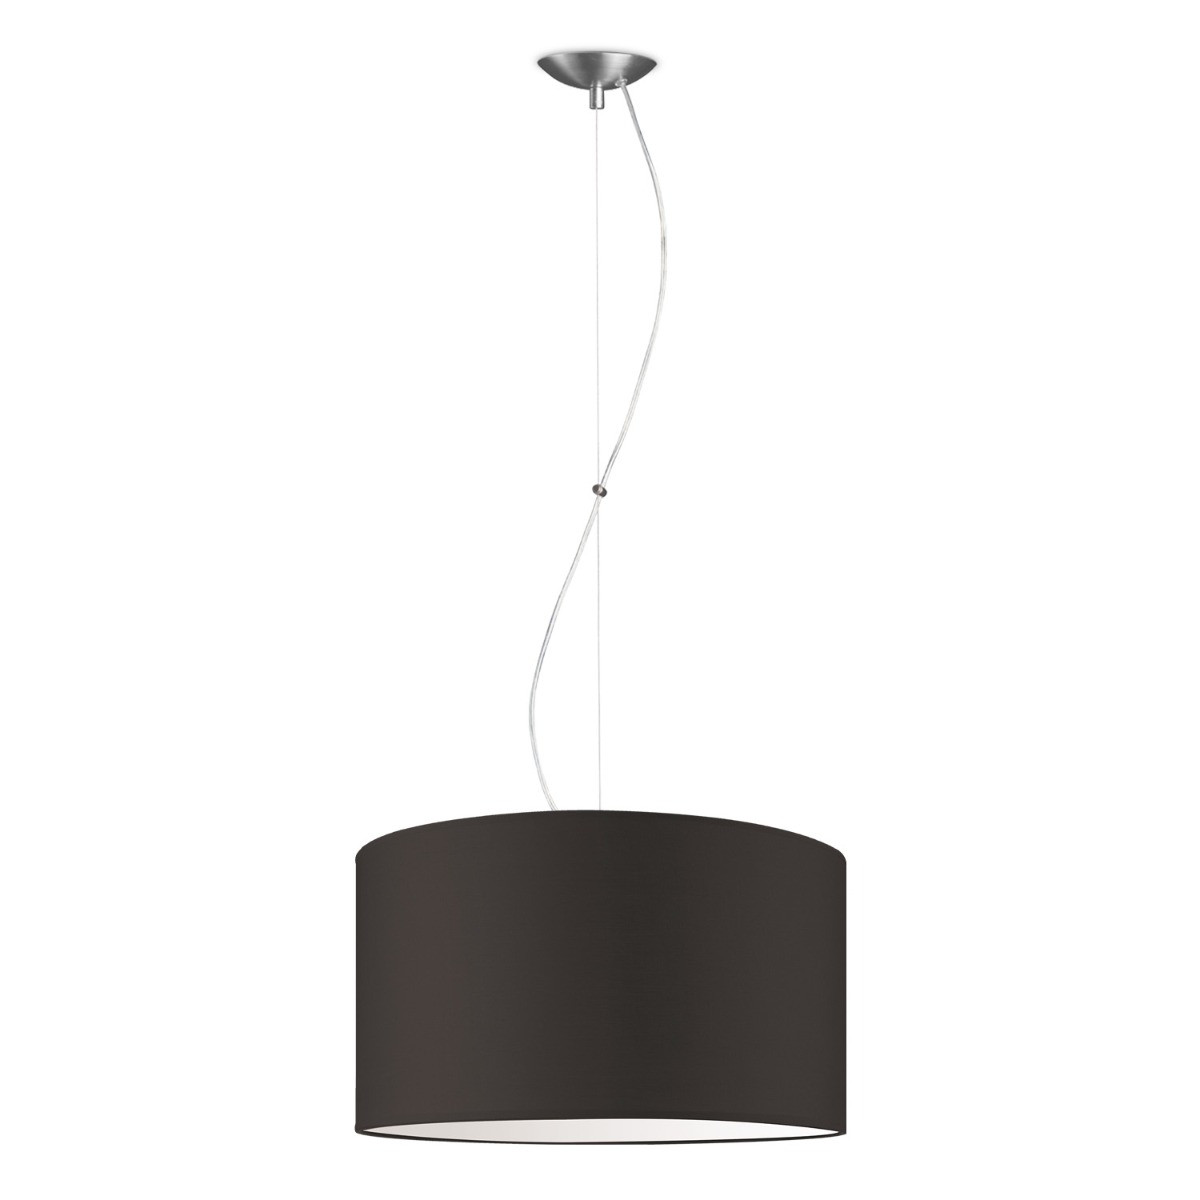 Light depot - hanglamp basic deluxe bling Ø 45 cm - bruin - Outlet